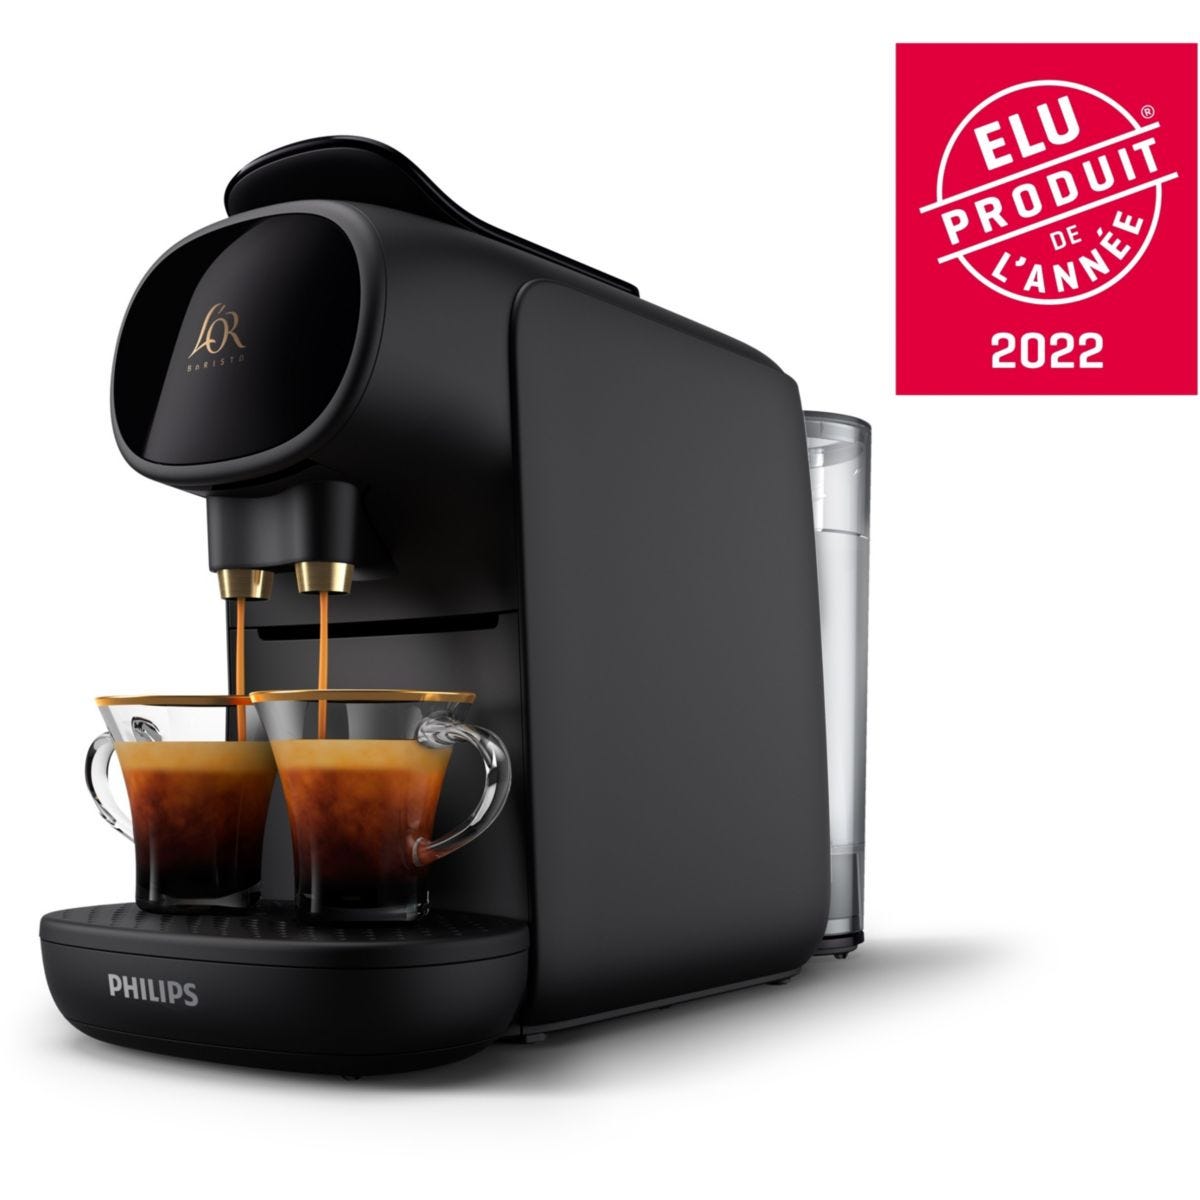 Moins de 25 euros pour cette machine à café multi-boissons pendant